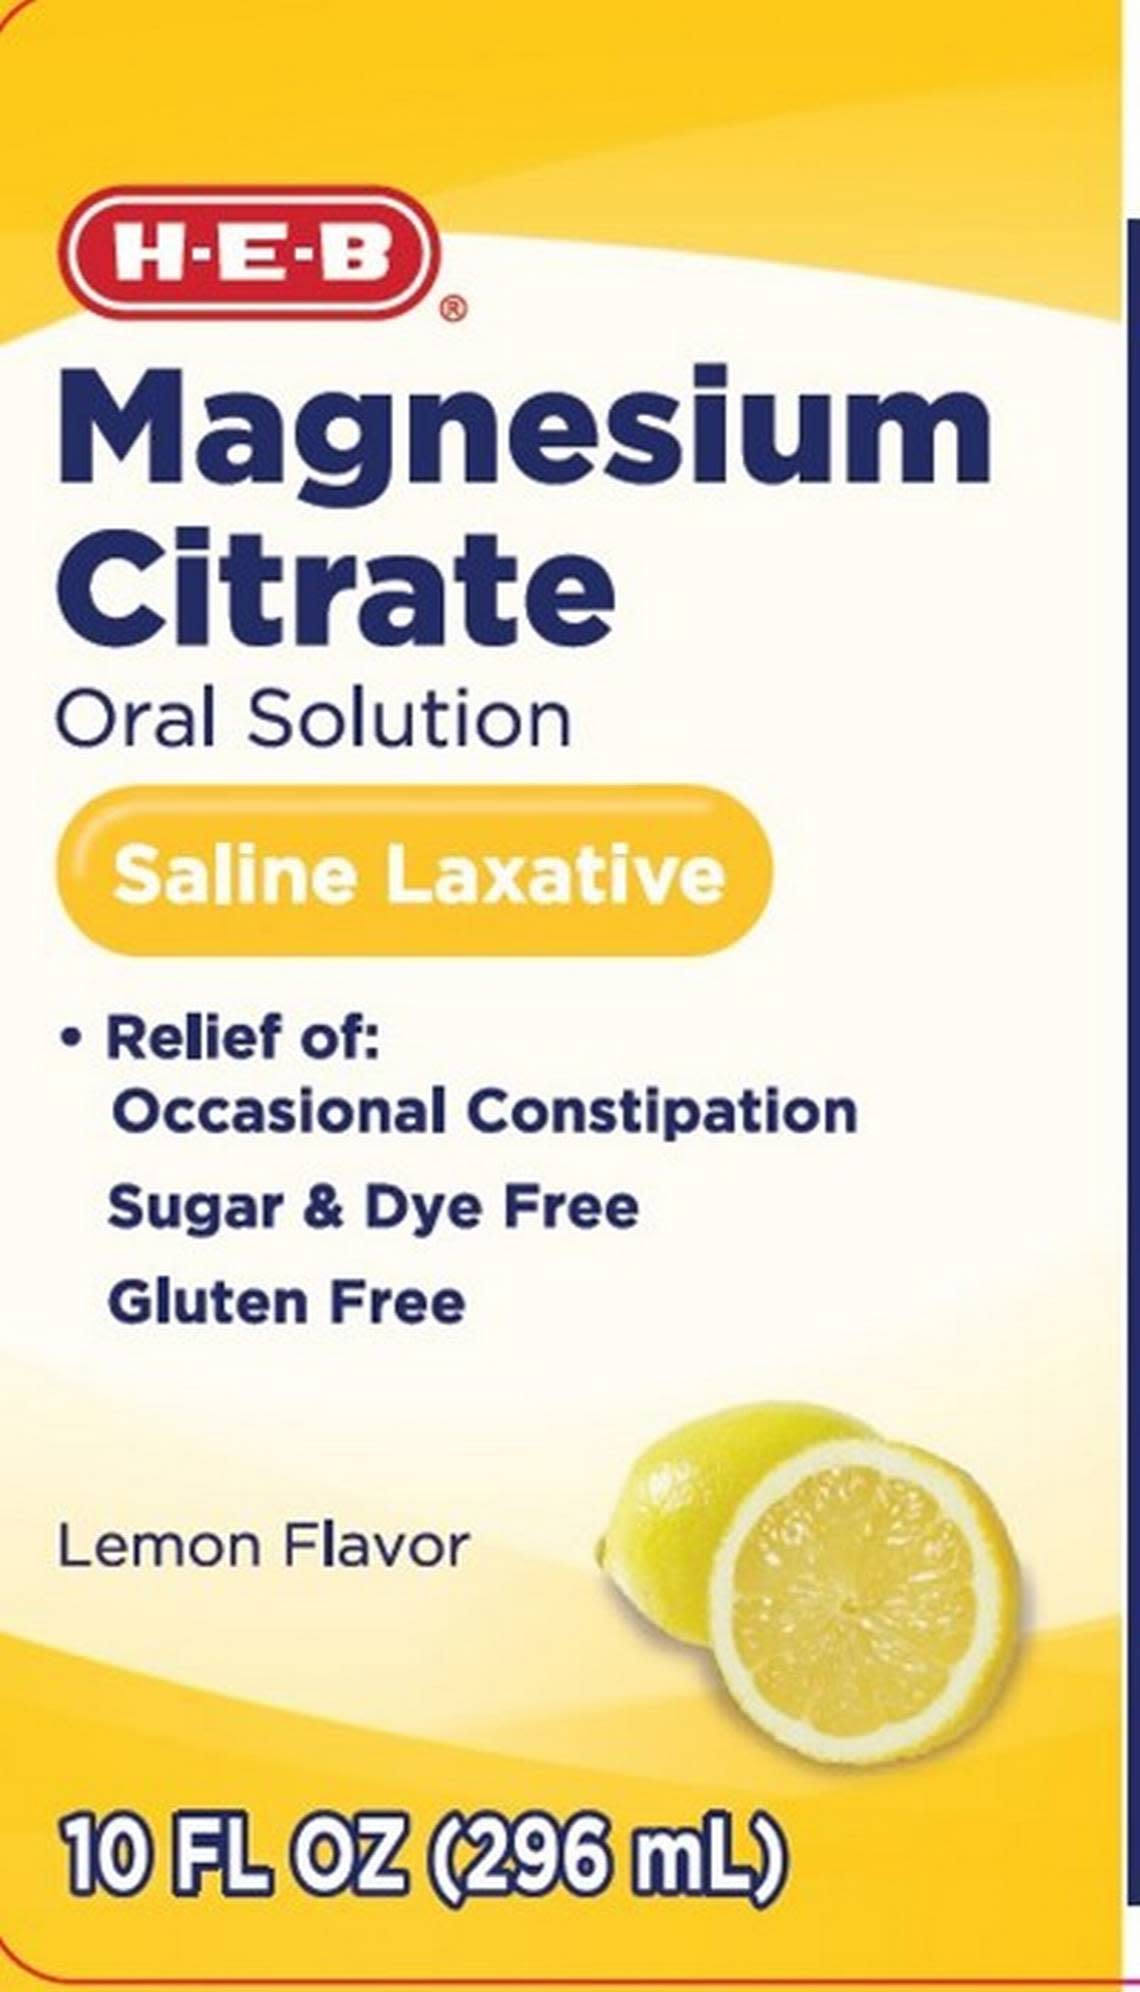 H-E-B’s Magnesium Citrate Saline Laxative Lemon Flavor